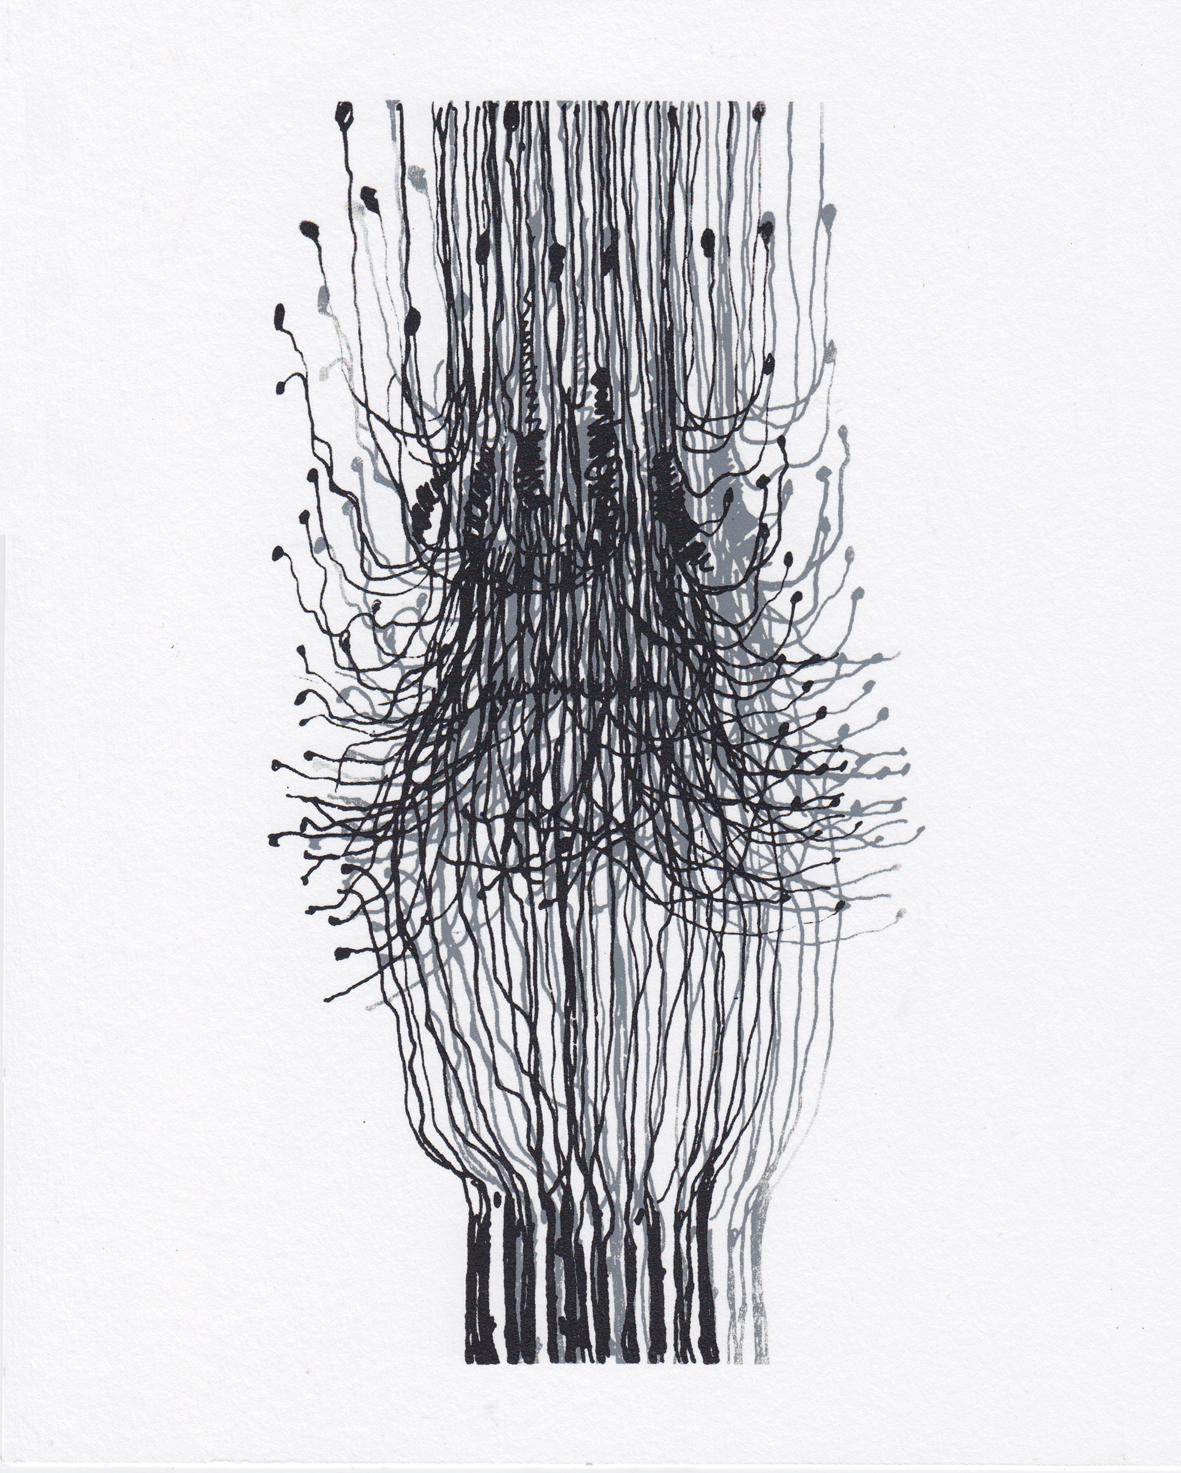 Neuron inspired by Santiago Ramón y Cajal, Dorota Piekorz, 2017